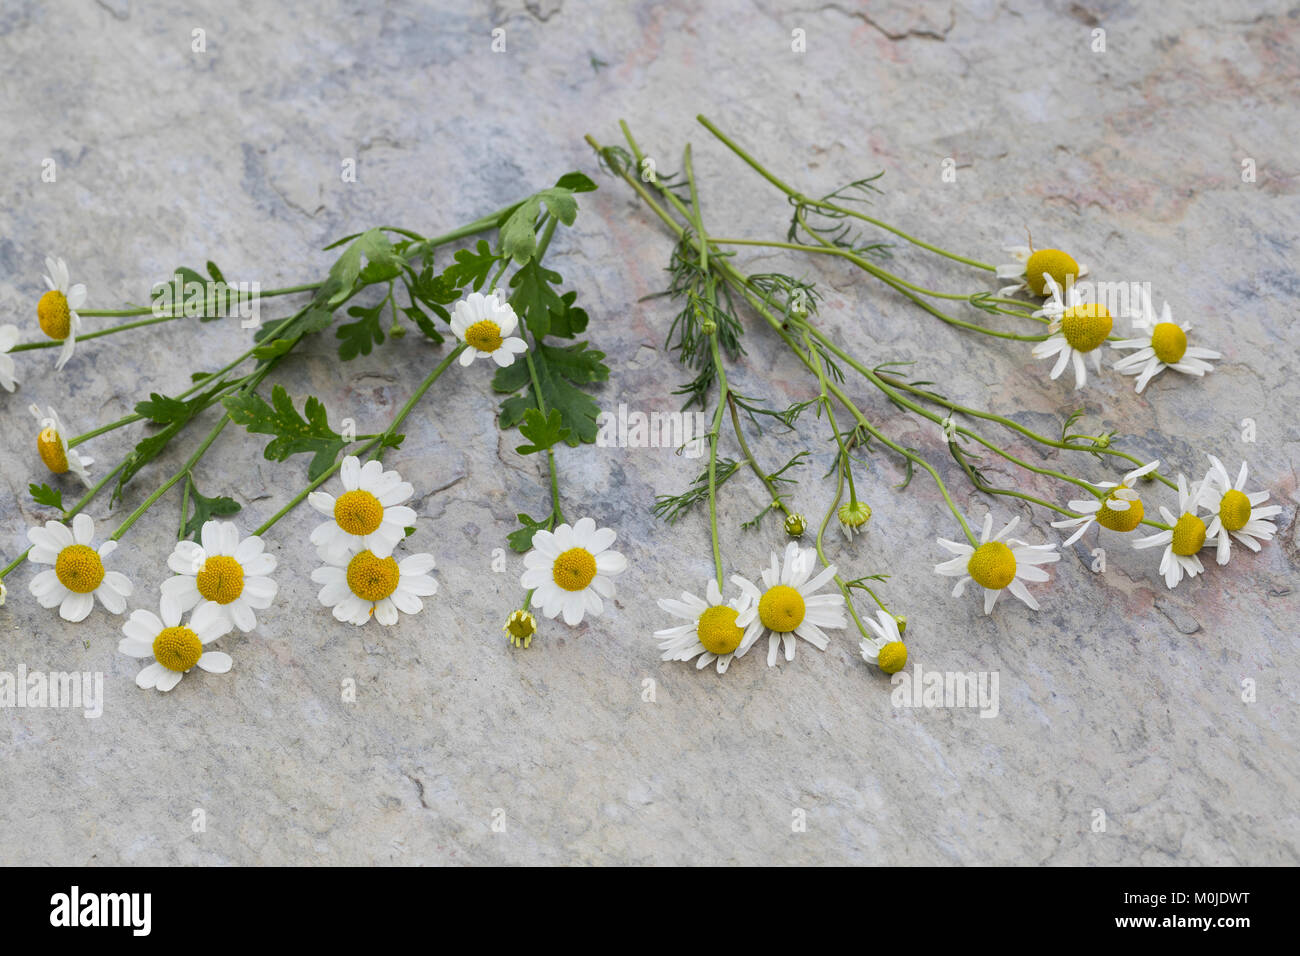 Vergleich zwischen Echter Kamille (rechts) und Mutterkraut (links). Mutterkraut, Mutter-Kraut, Tanacetum parthenium, Chrysanthemum parthenium, Feverfe Stock Photo